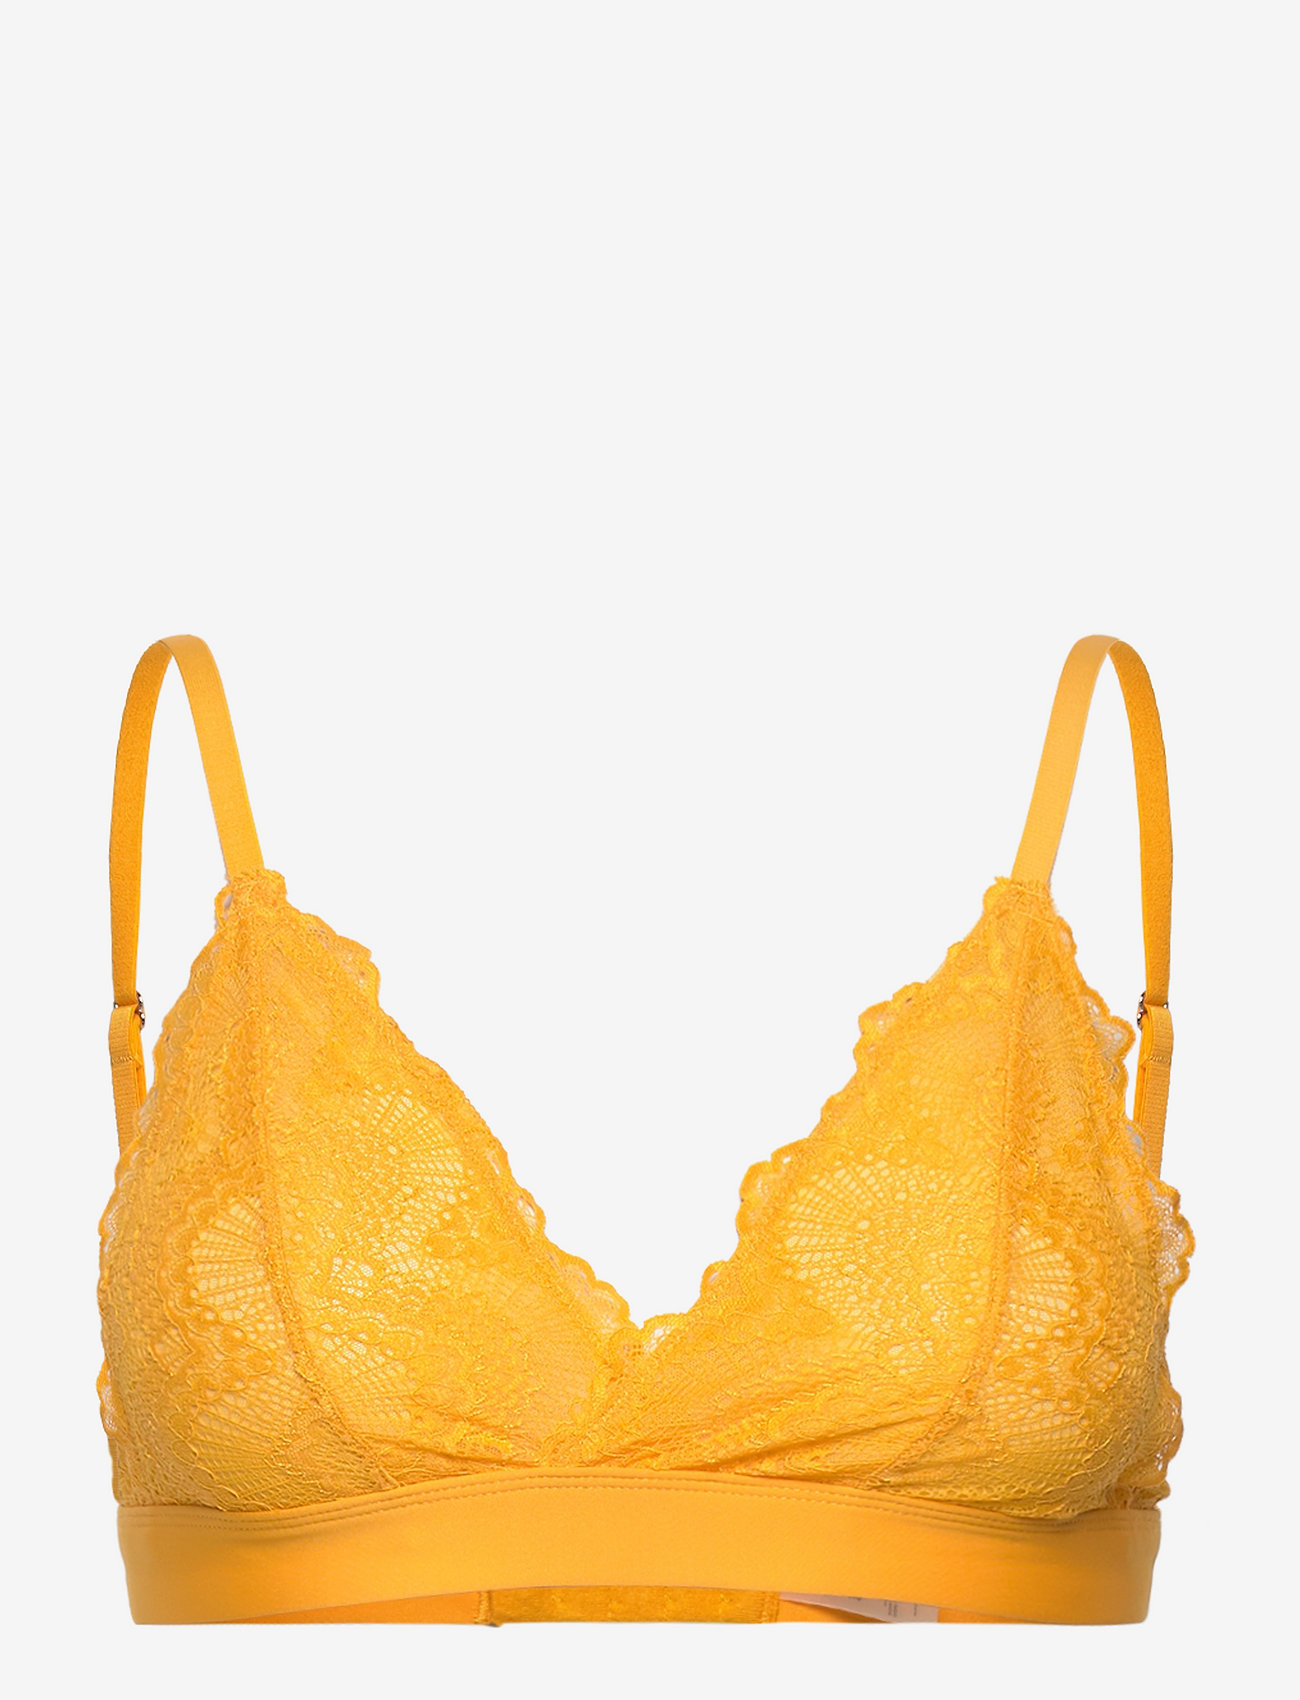 Understatement Underwear Mango Lace Lined Bralette - Bras | Boozt.com